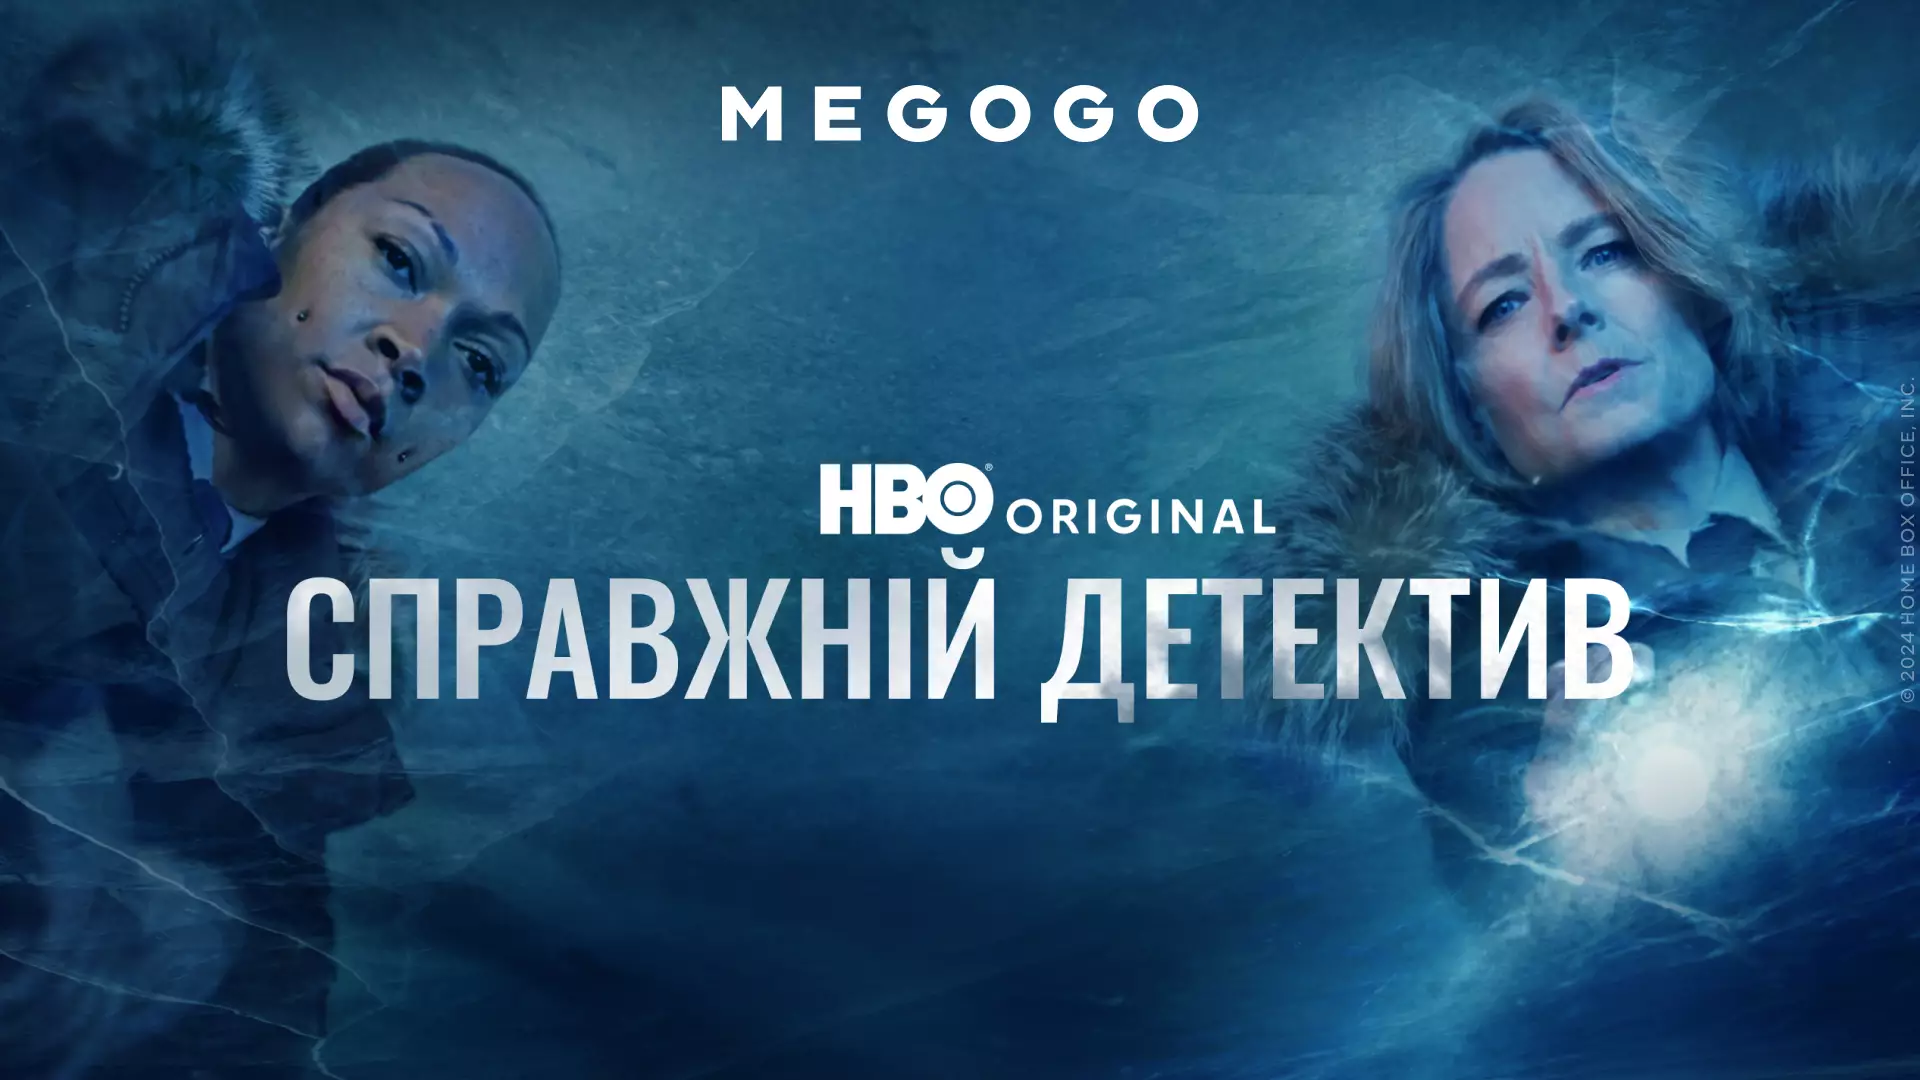 Сьогодні на Megogo стартував четвертий сезон серіалу «Справжній детектив» від HBO